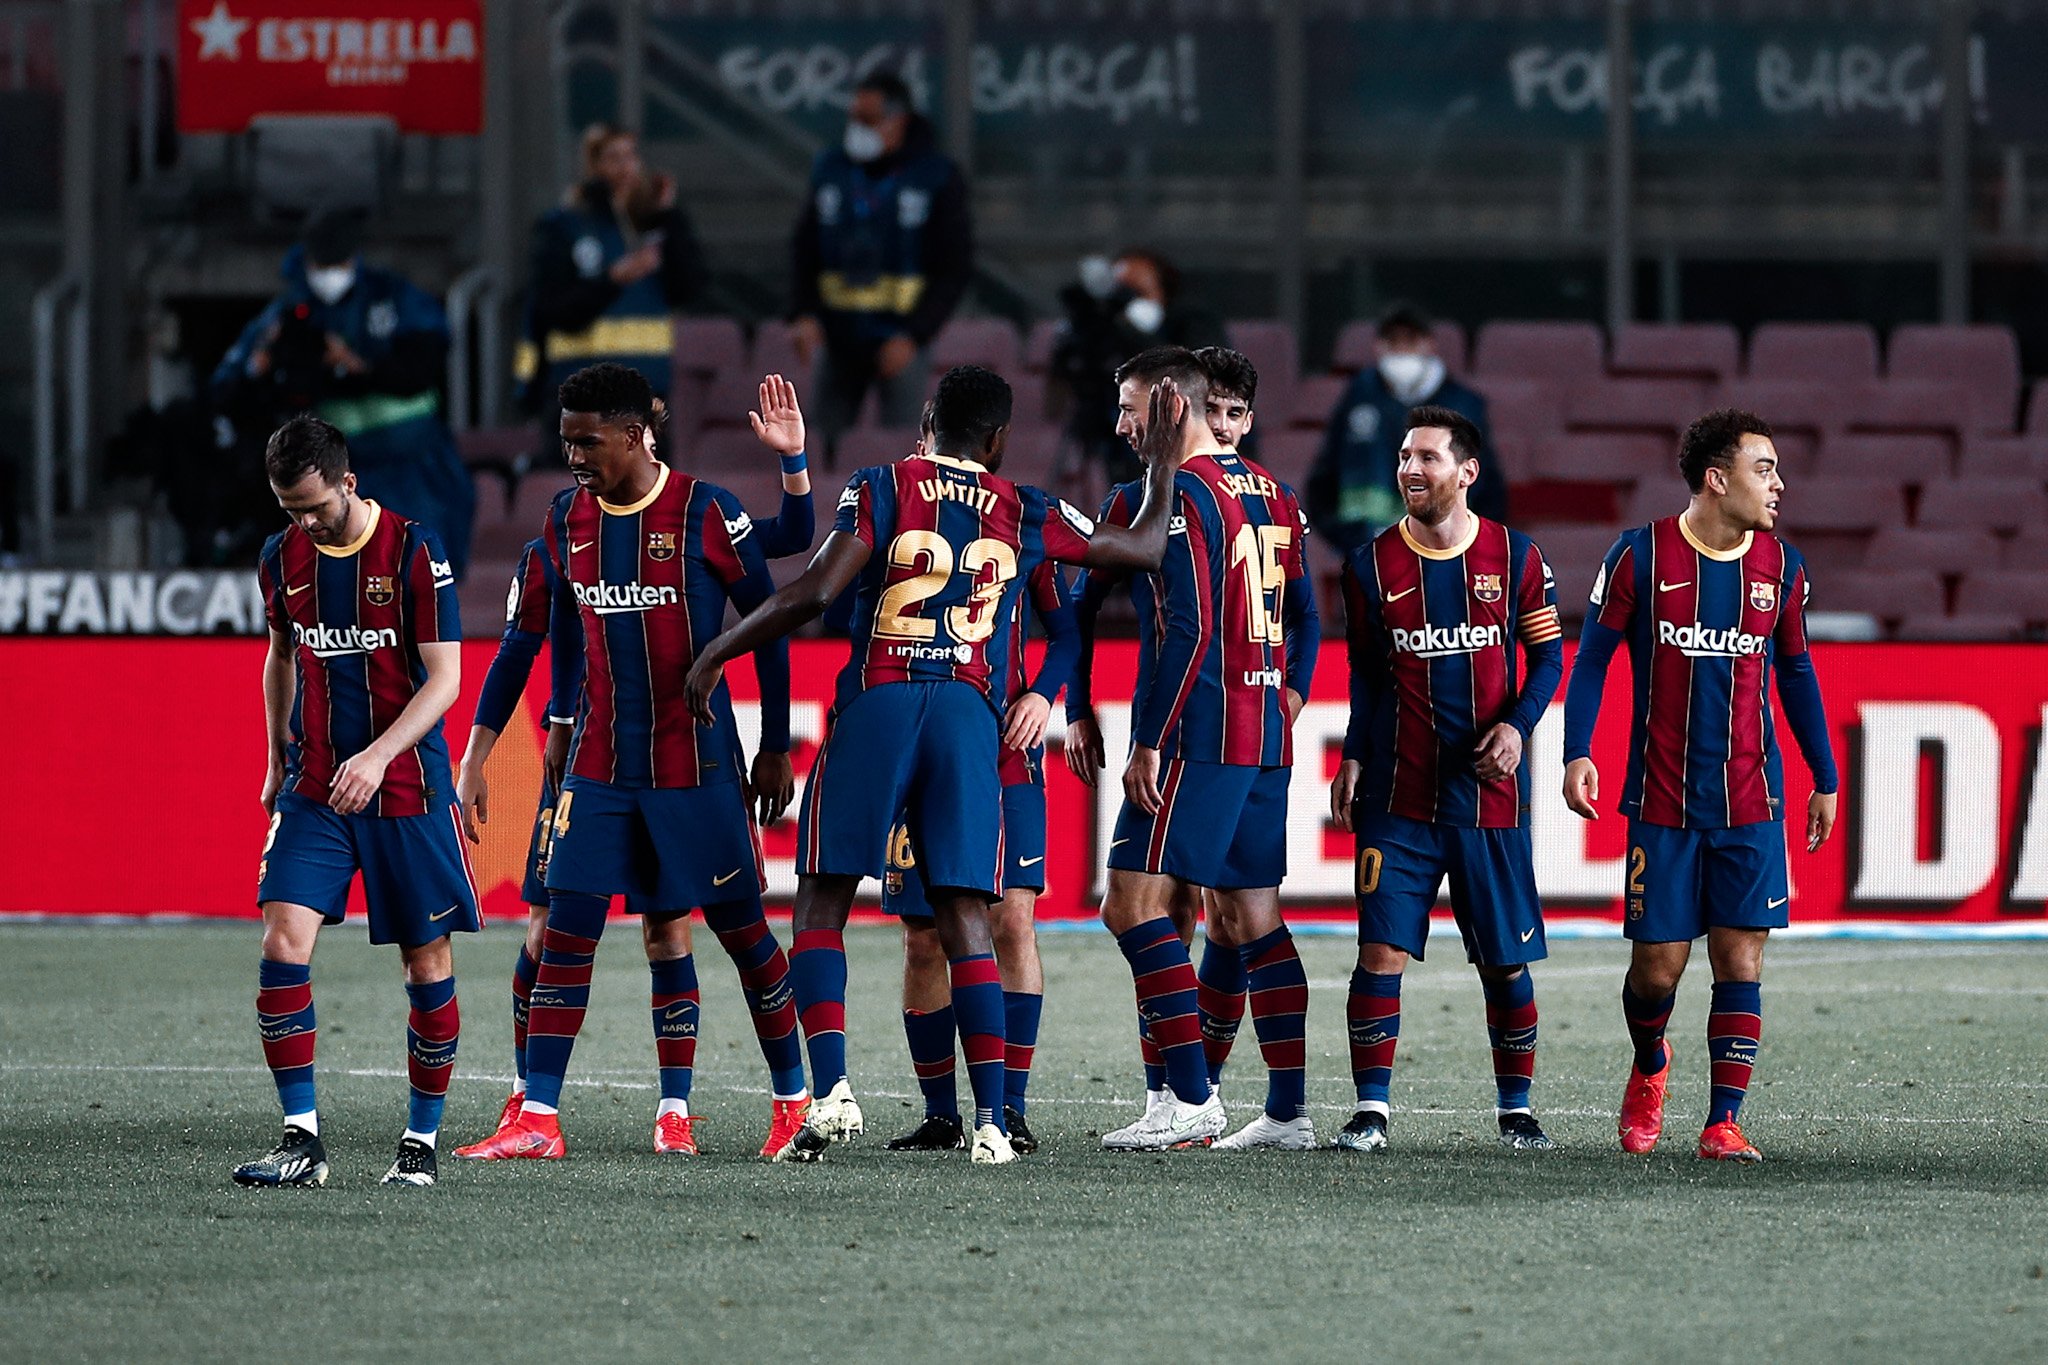 Villareal – Barça : Dembélé remplaçant, Messi et Griezmann devant, les compos